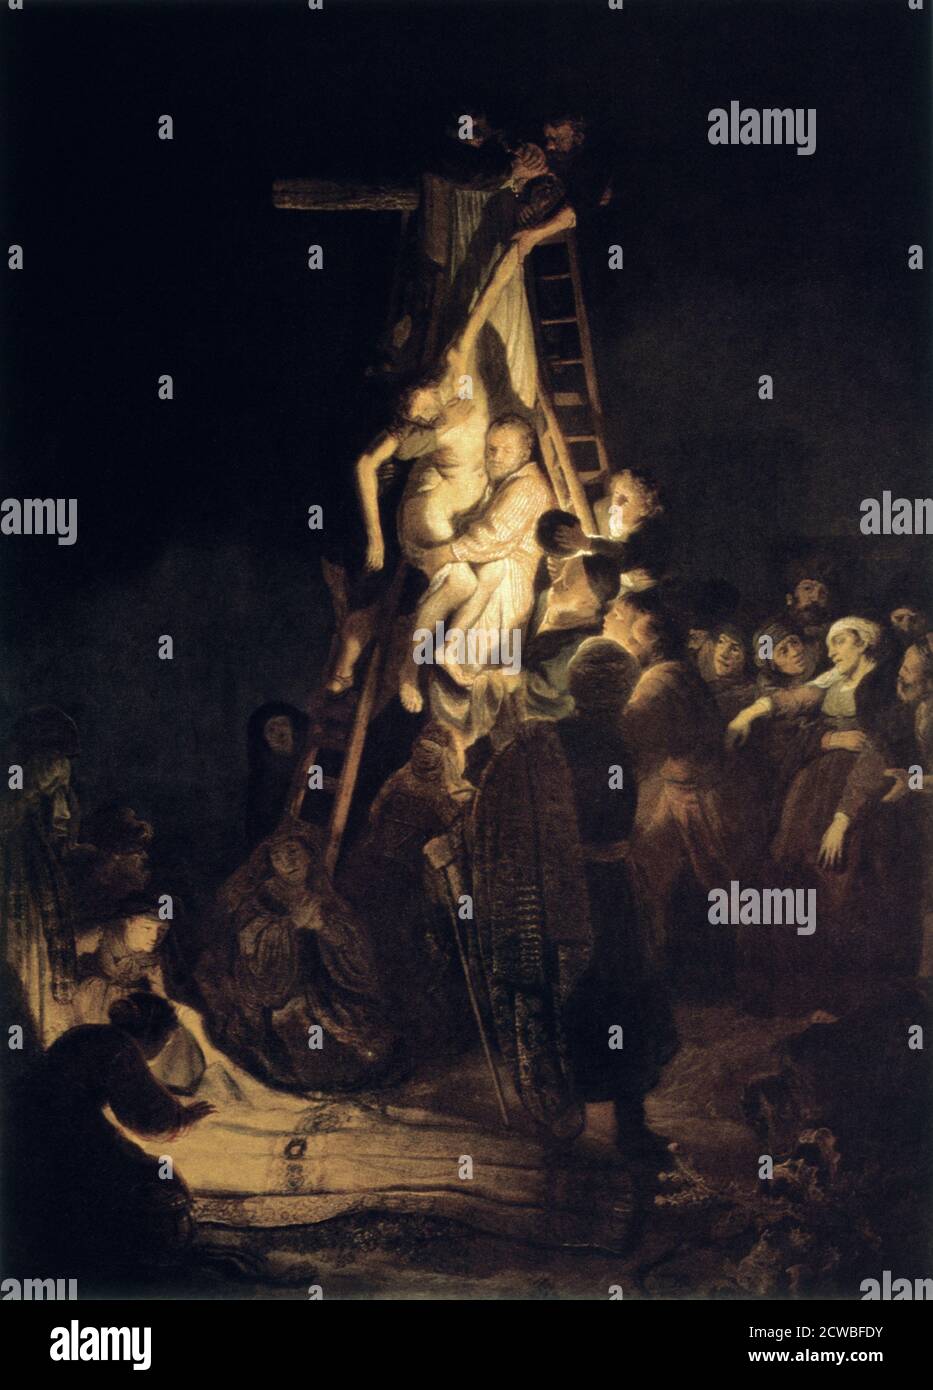 Descente de la Croix', 1634, Rembrandt Harmensz van Rijn. Du musée de l'Ermitage, Saint-Pétersbourg, Russie. Banque D'Images